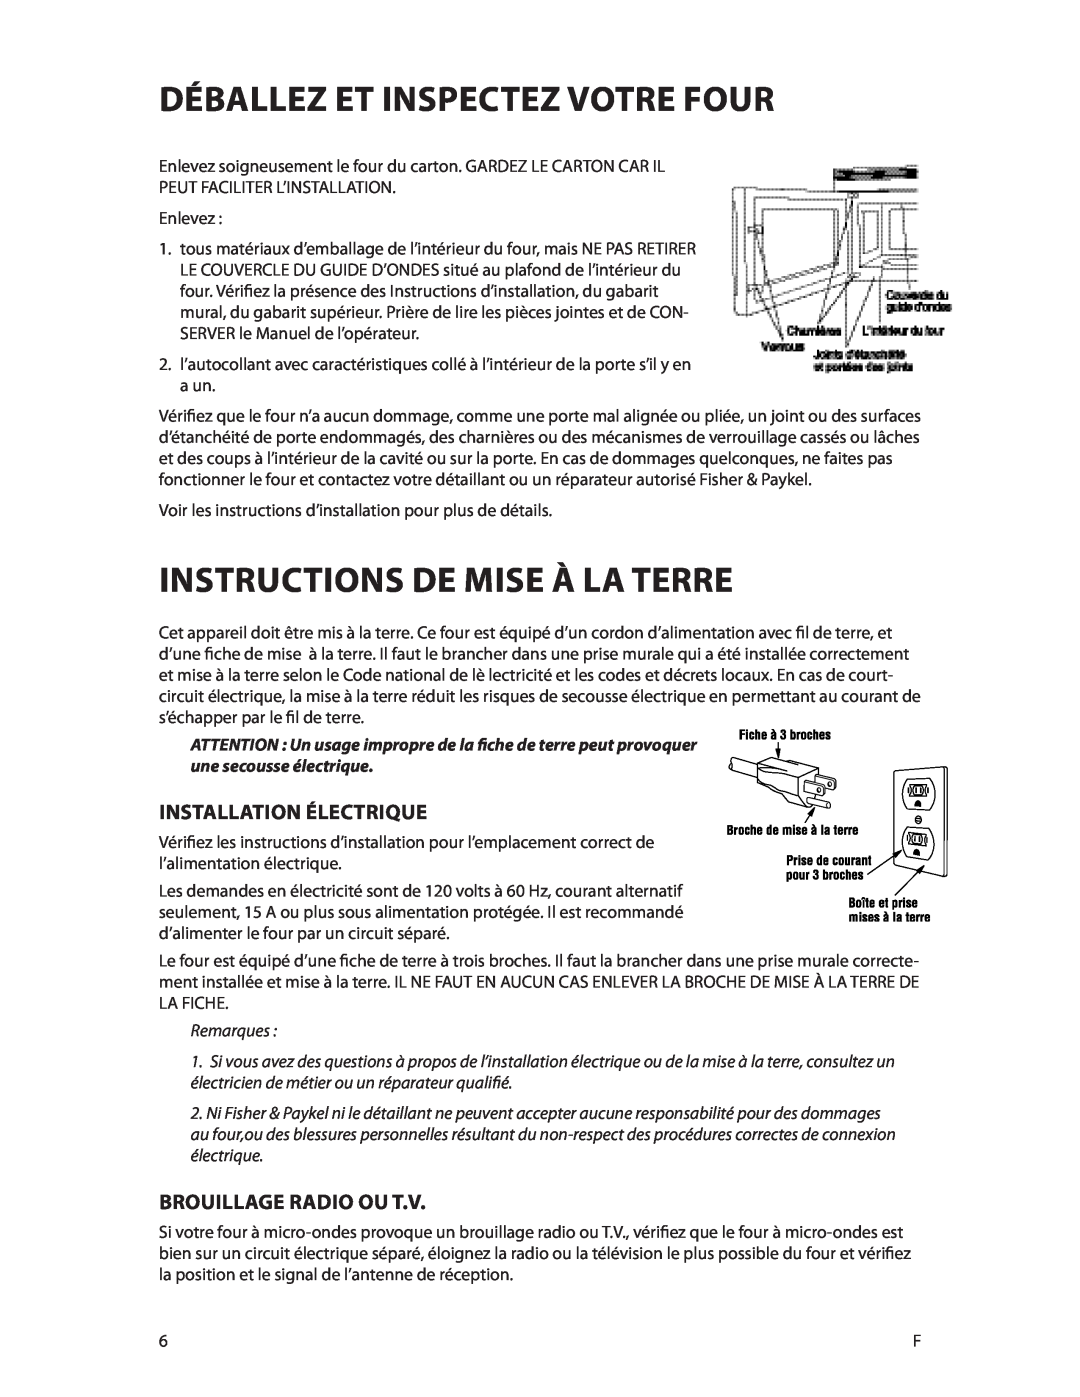 DCS CMOH30SS manual Déballez et inspectez votre four, Instructions De Mise À La Terre, Installation électrique 